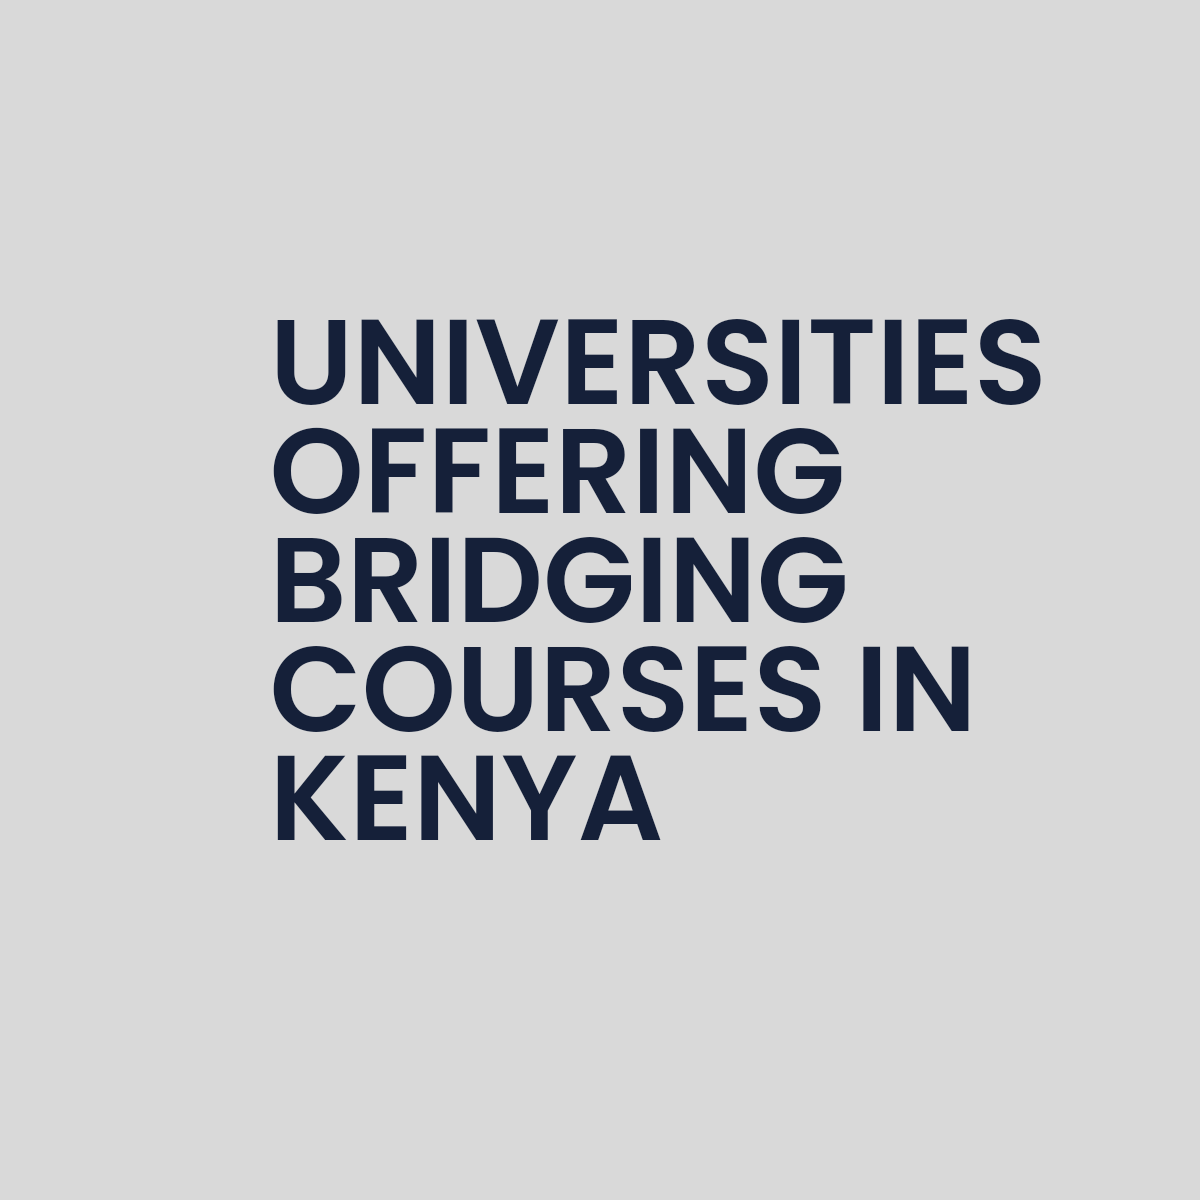 Universities Offering Bridging Courses in Kenya